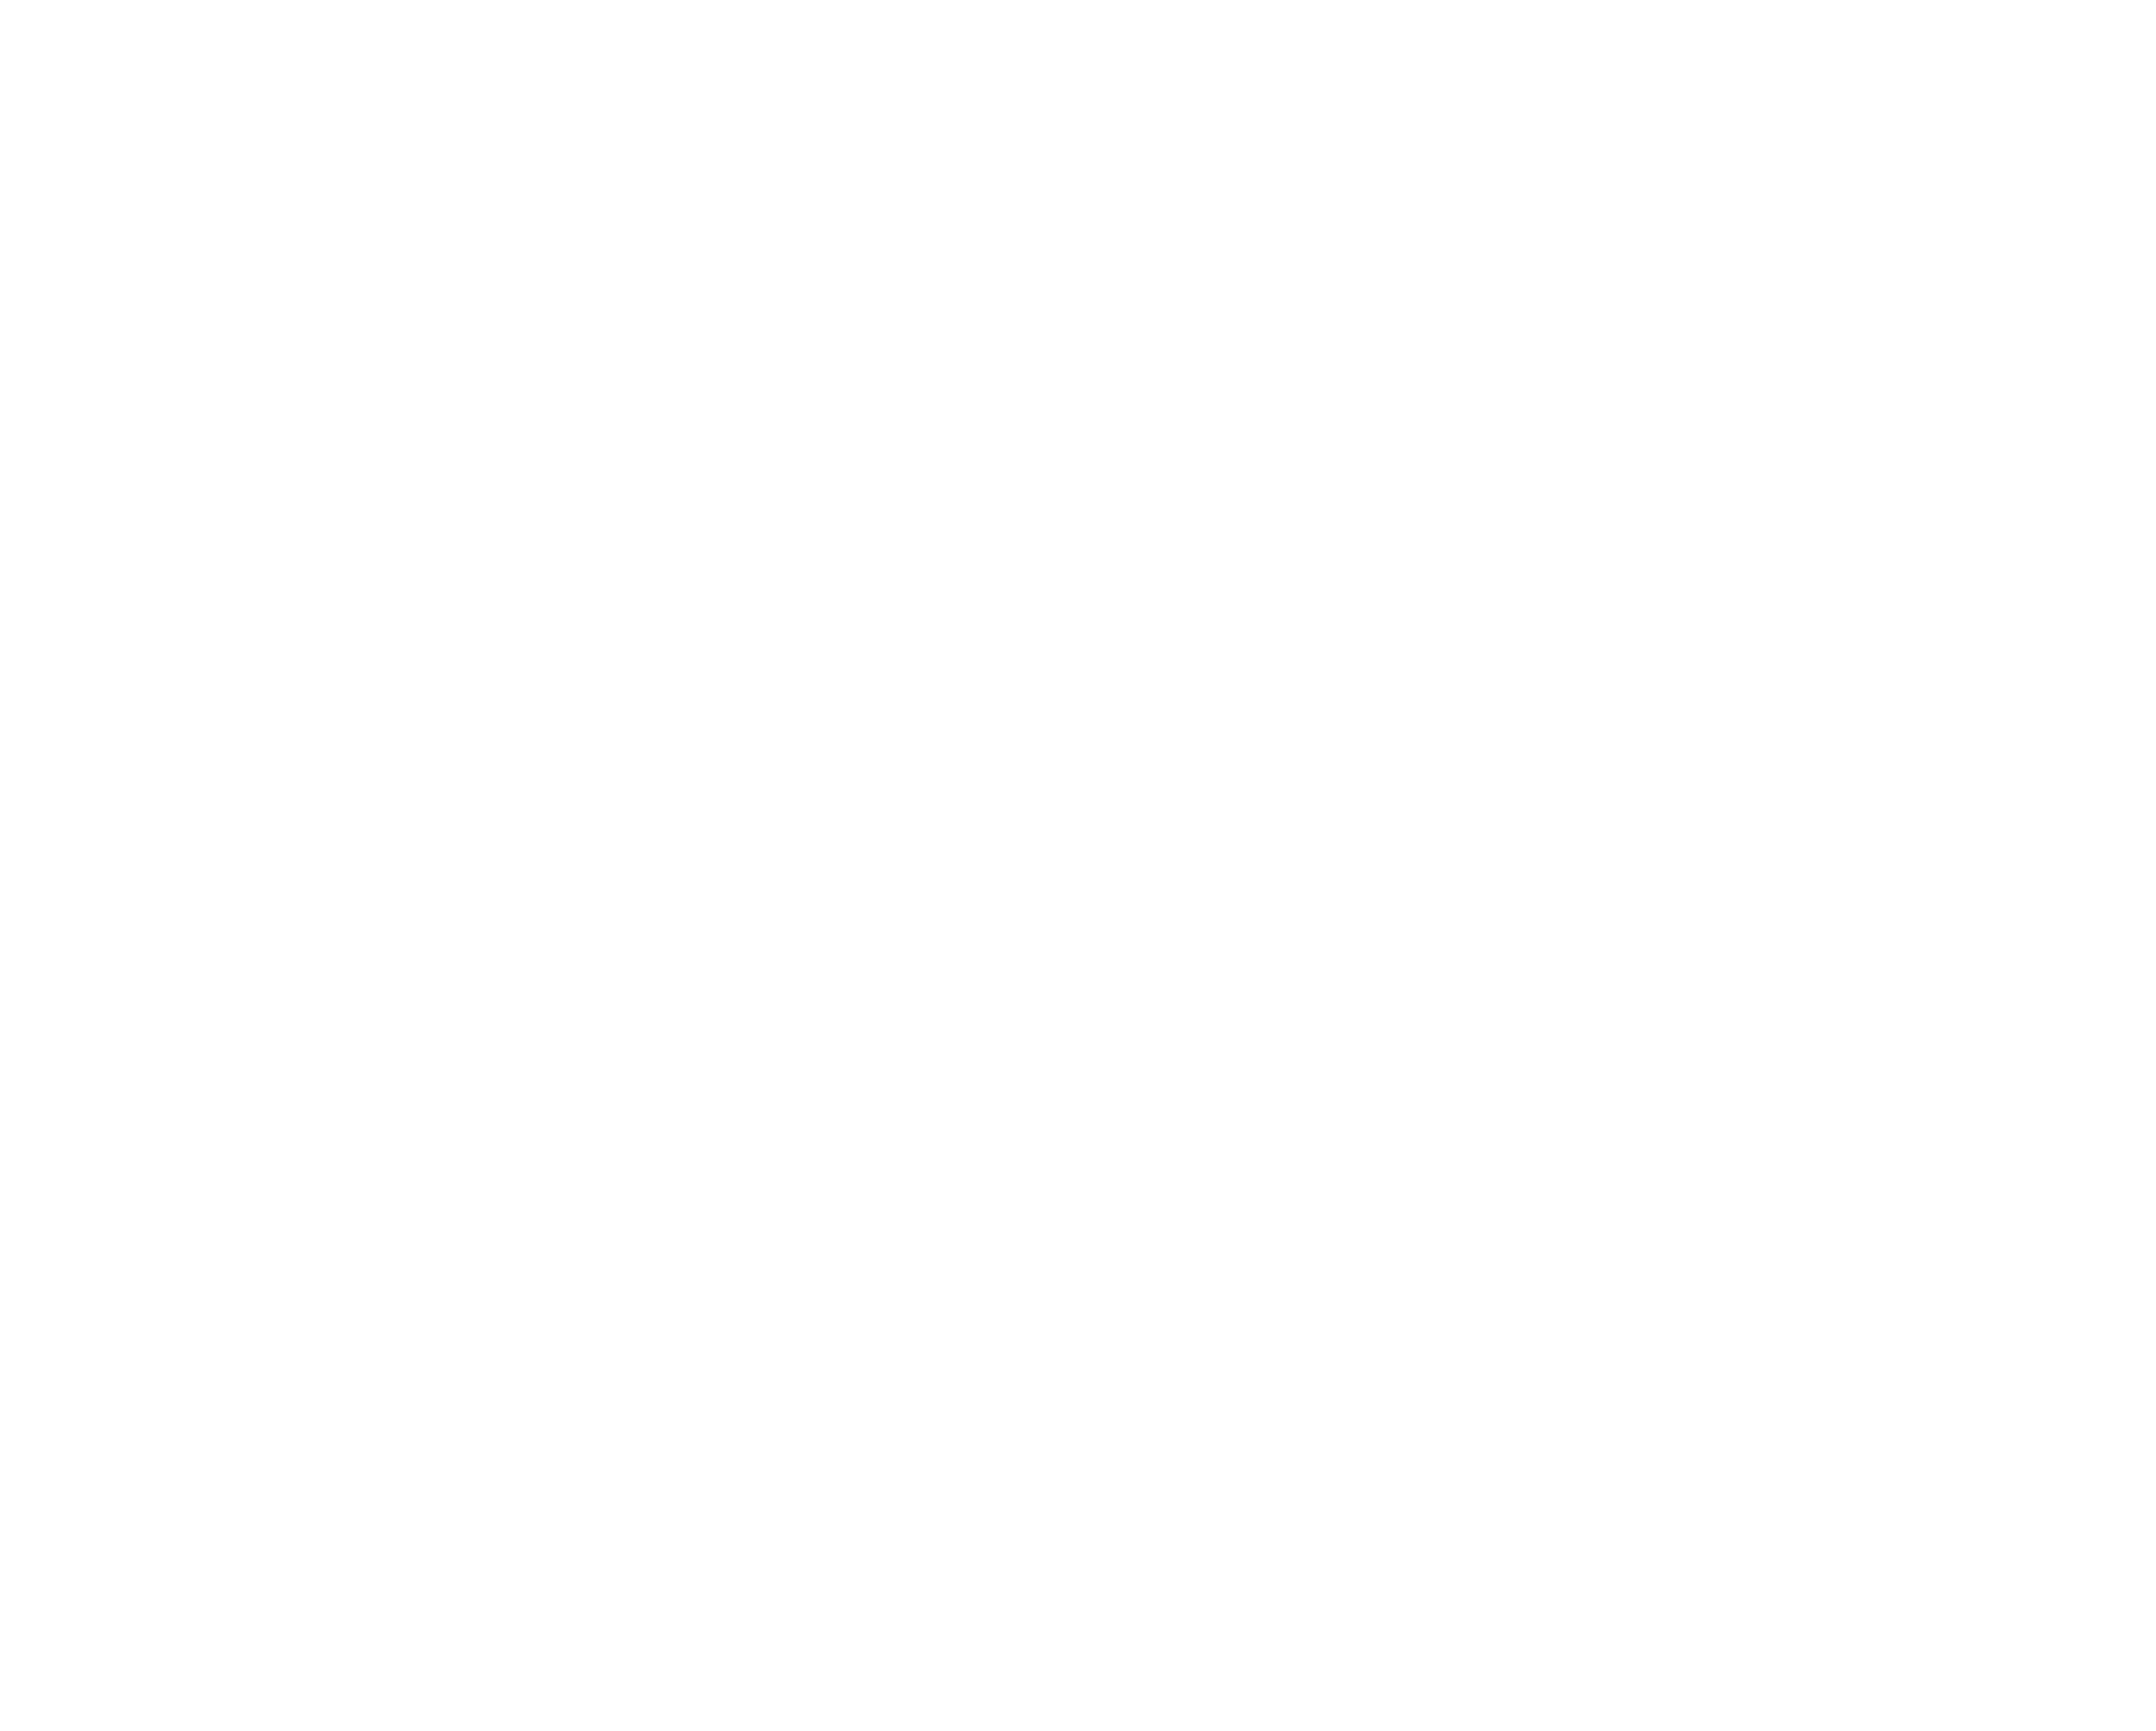 DMB Insurance Agency: Life insurance company in Houston and Katy Texas, Florida, California